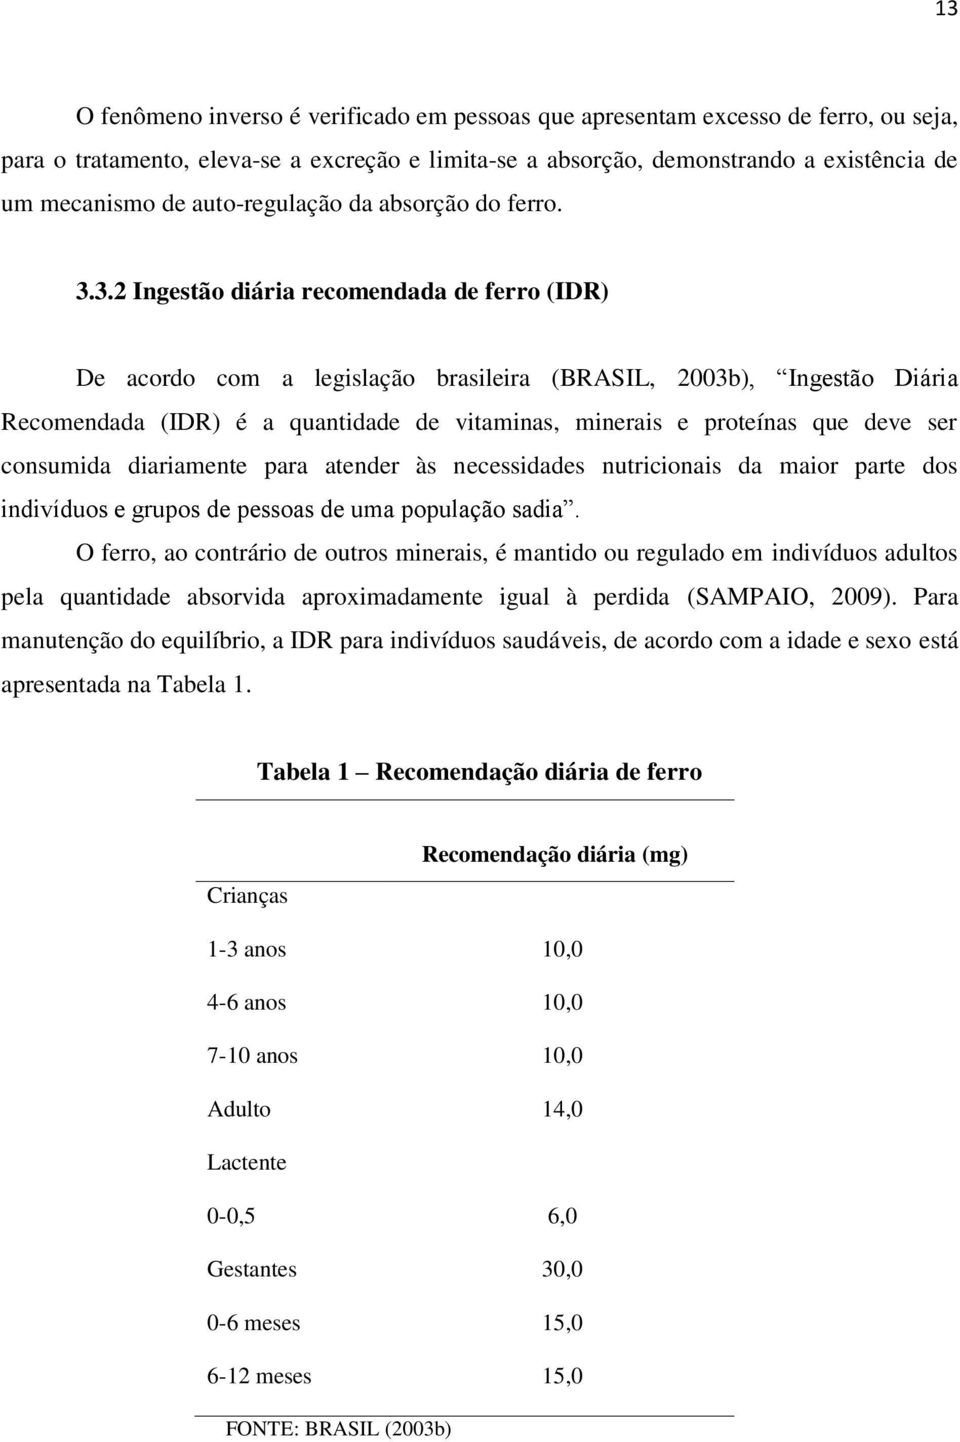 3.2 Ingestão diária recomendada de ferro (IDR) De acordo com a legislação brasileira (BRASIL, 2003b), Ingestão Diária Recomendada (IDR) é a quantidade de vitaminas, minerais e proteínas que deve ser